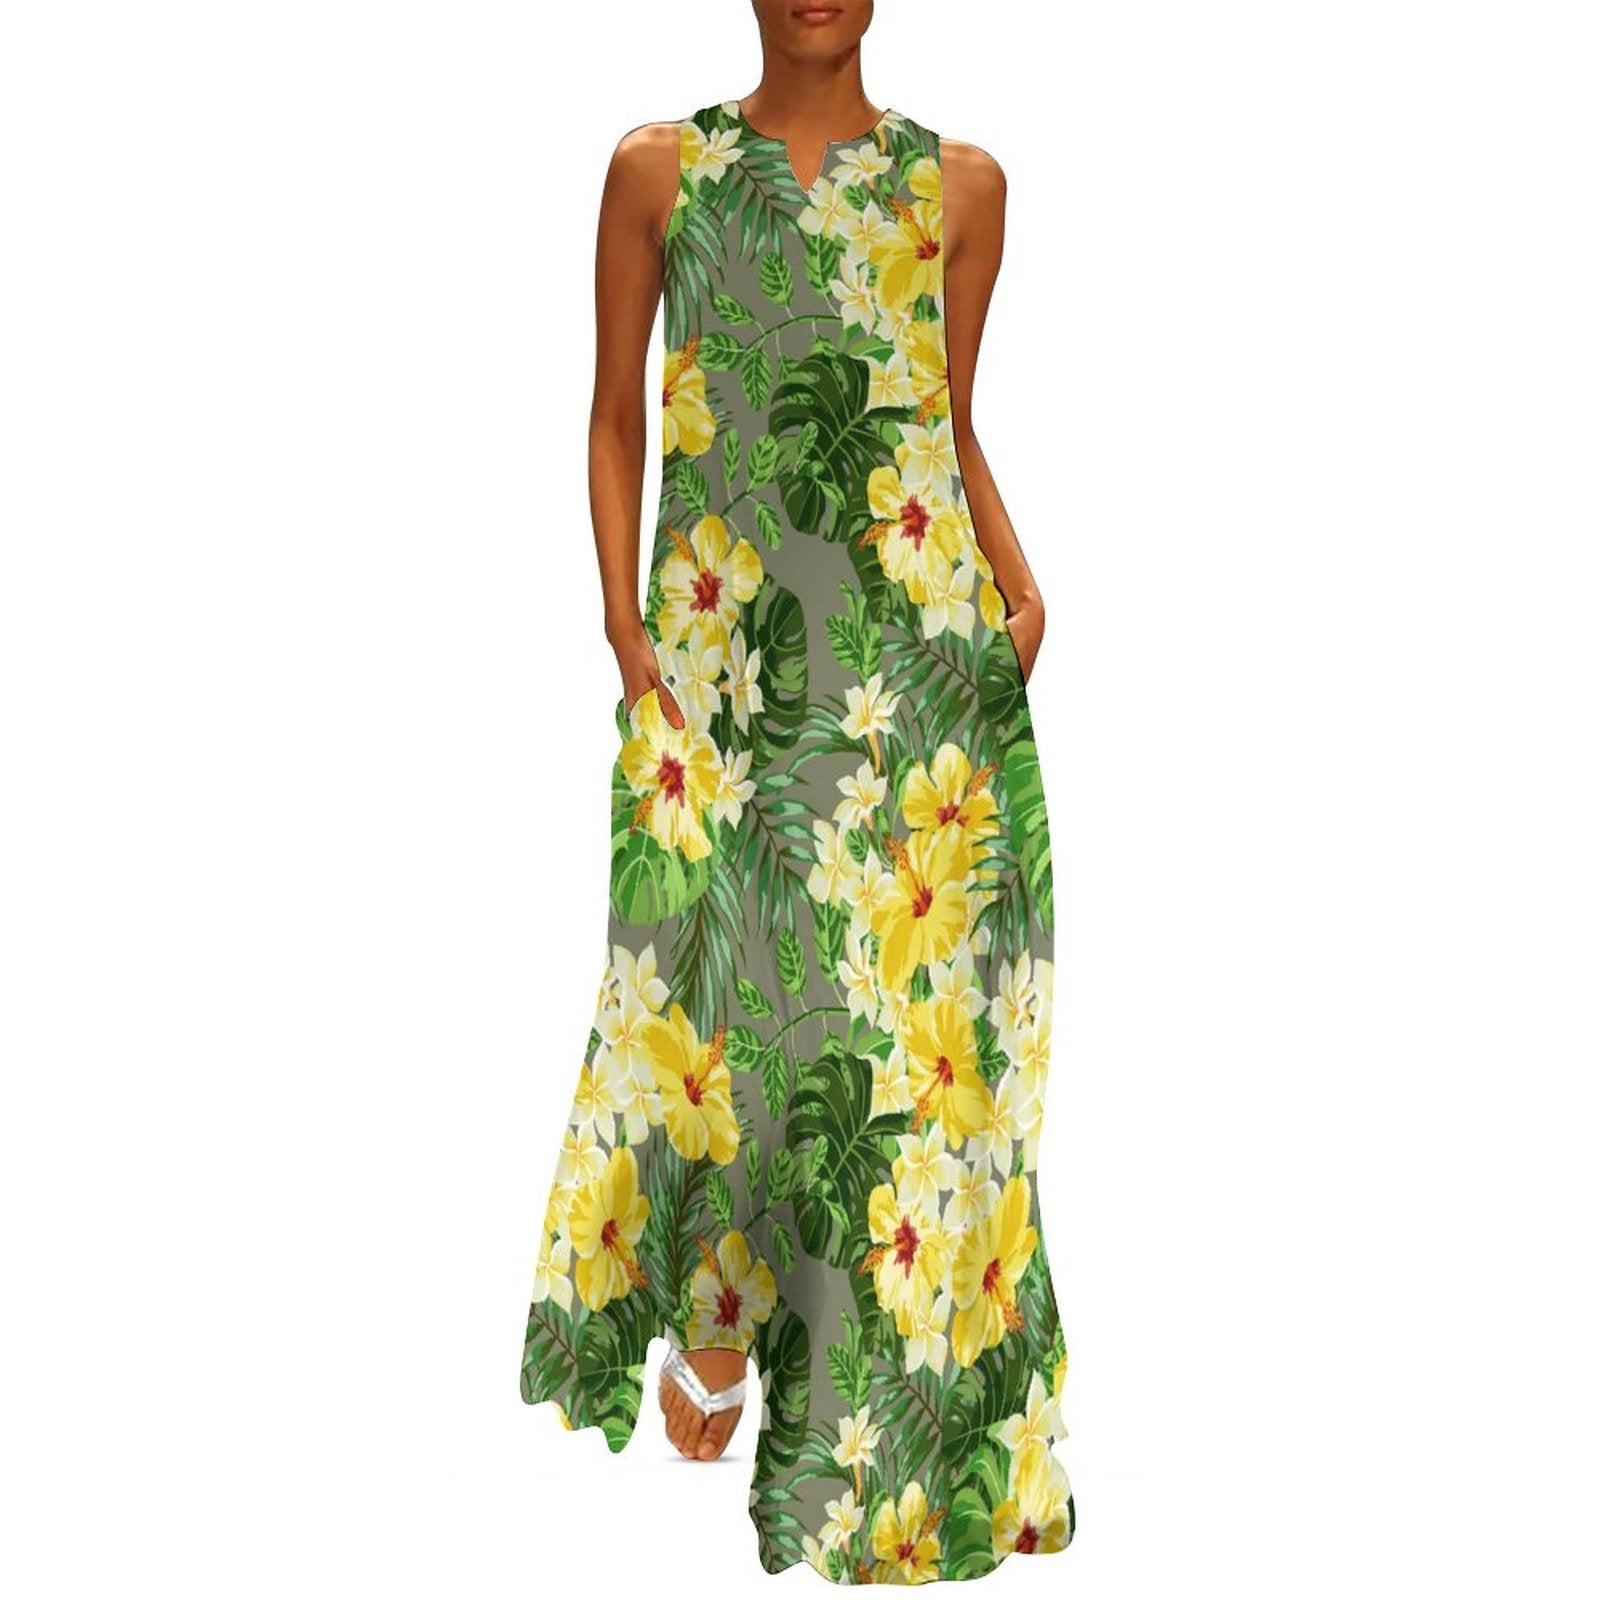 Sleeveless Ankle-Length Shift Dress - Tropical Garden